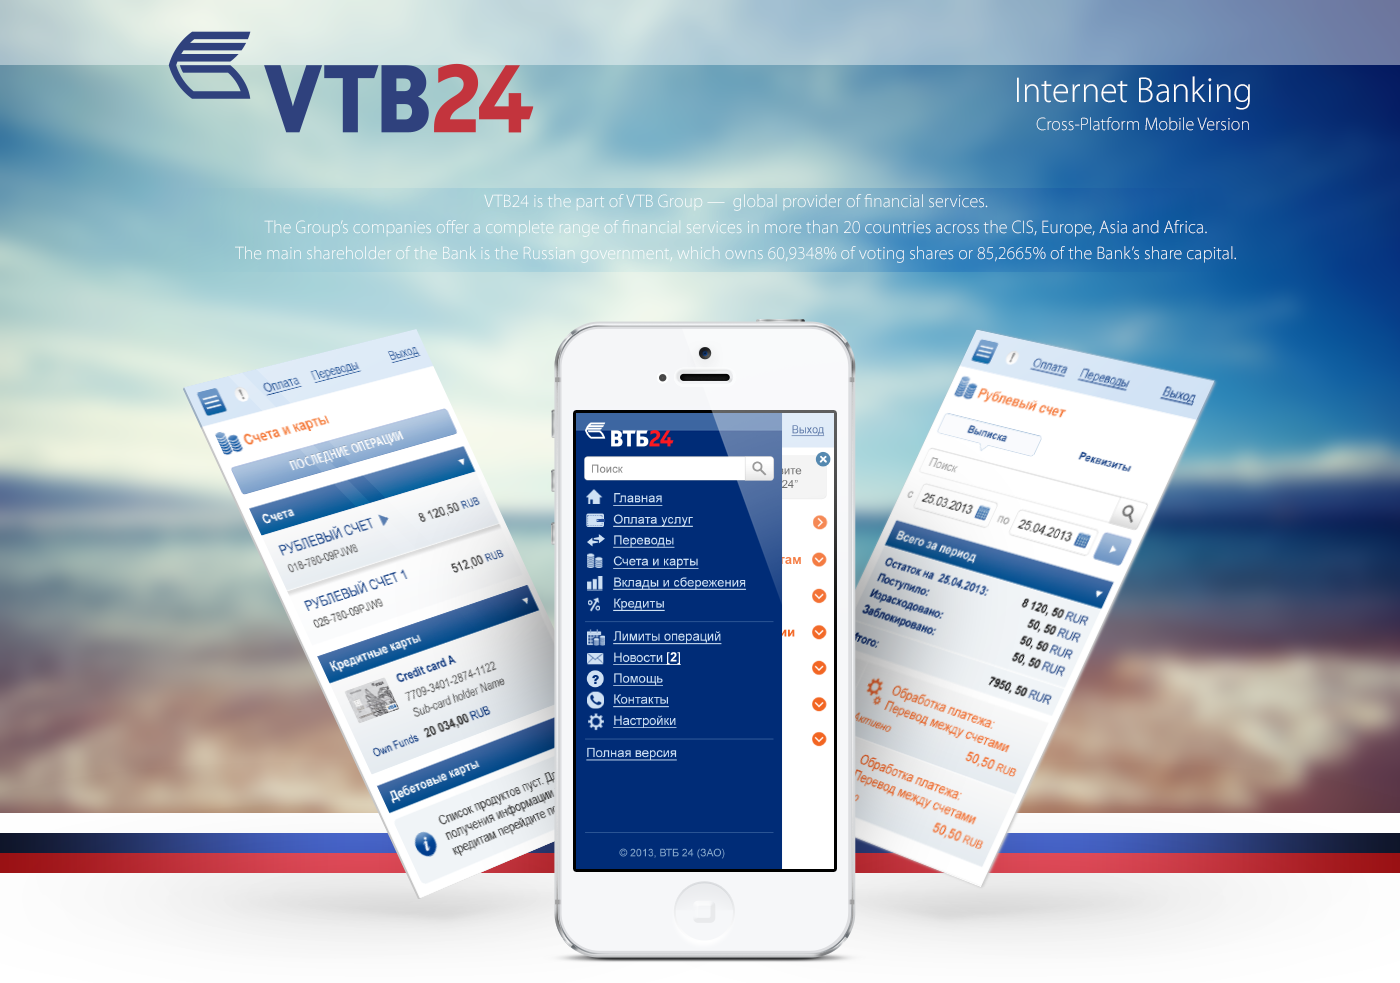 Bank mobile Internet bank Cross-Platform crossplatform banking VTB VTB24 vtb group ux user experience UI GUI Mobile app